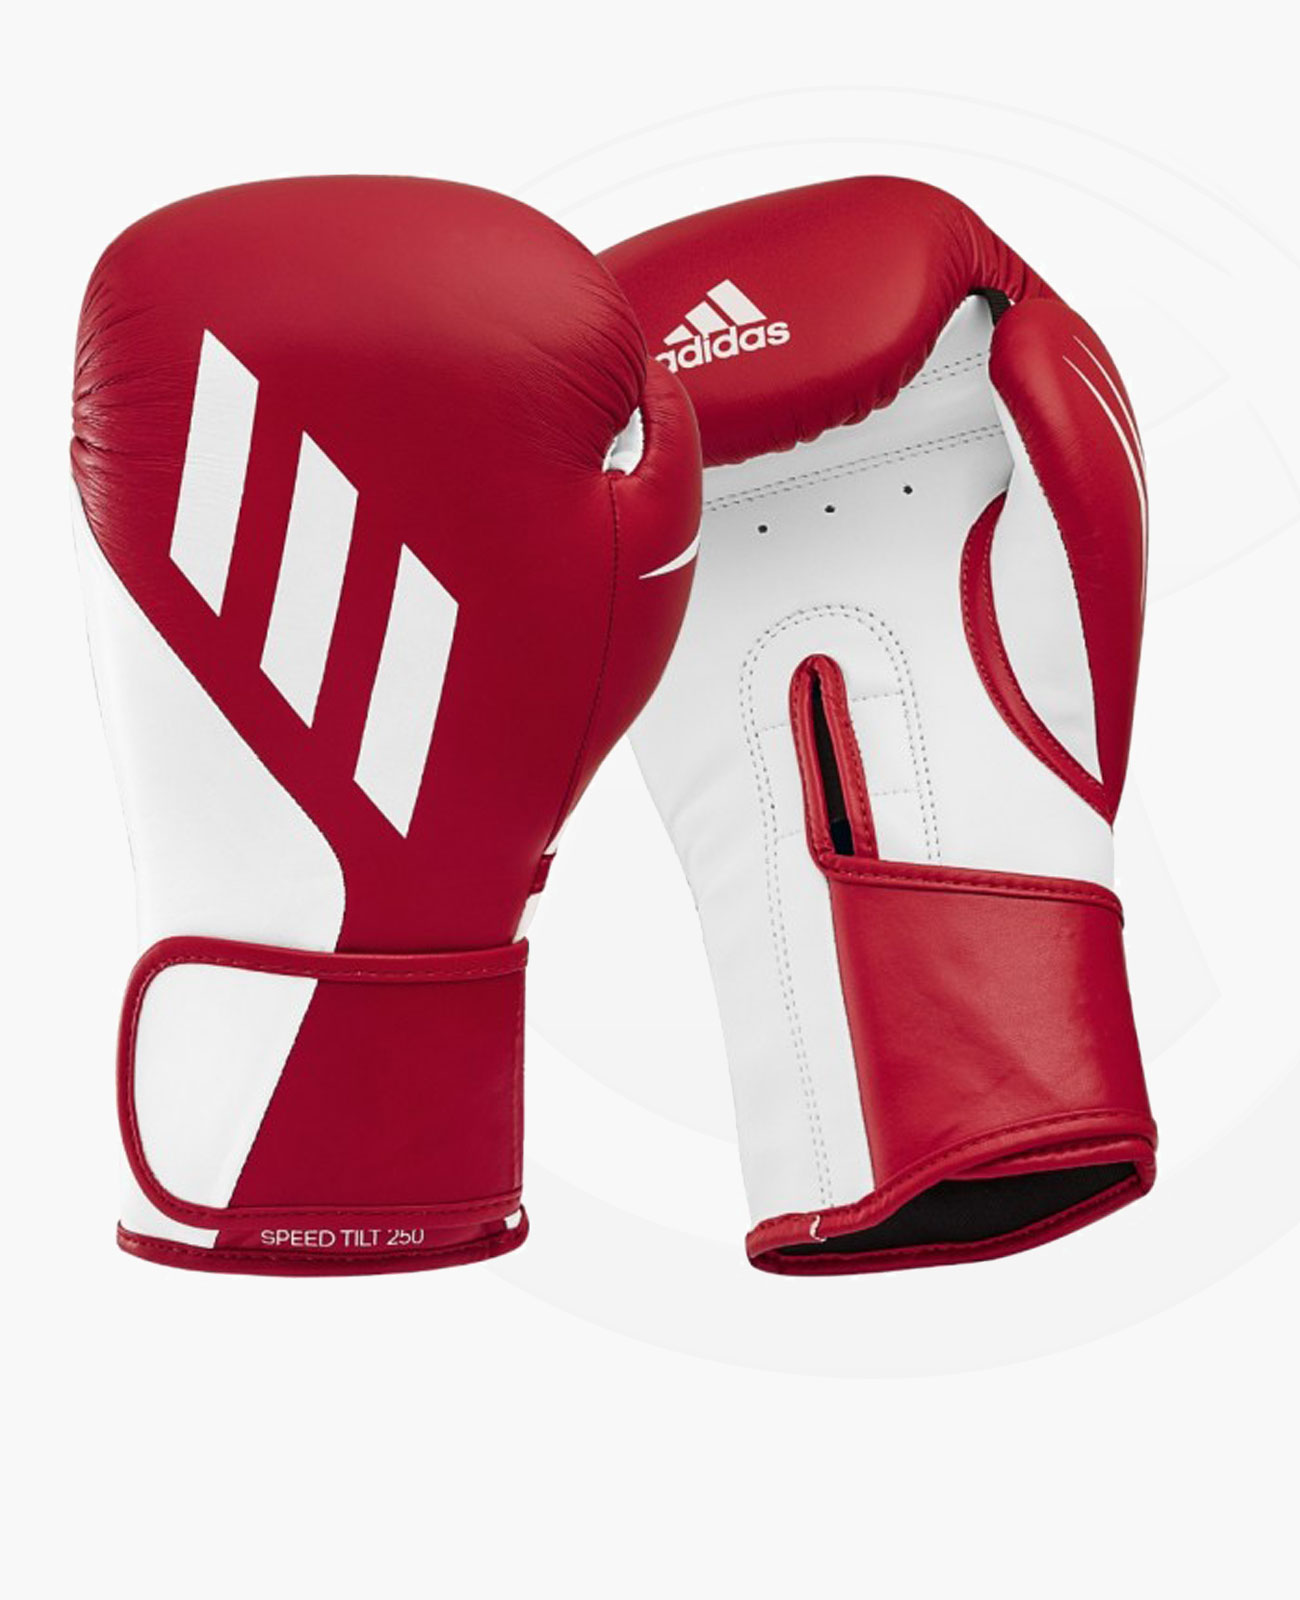 weiss adidas Fightshop Boxhandschuhe Budo TILT 250 | rot Ausrüstung &